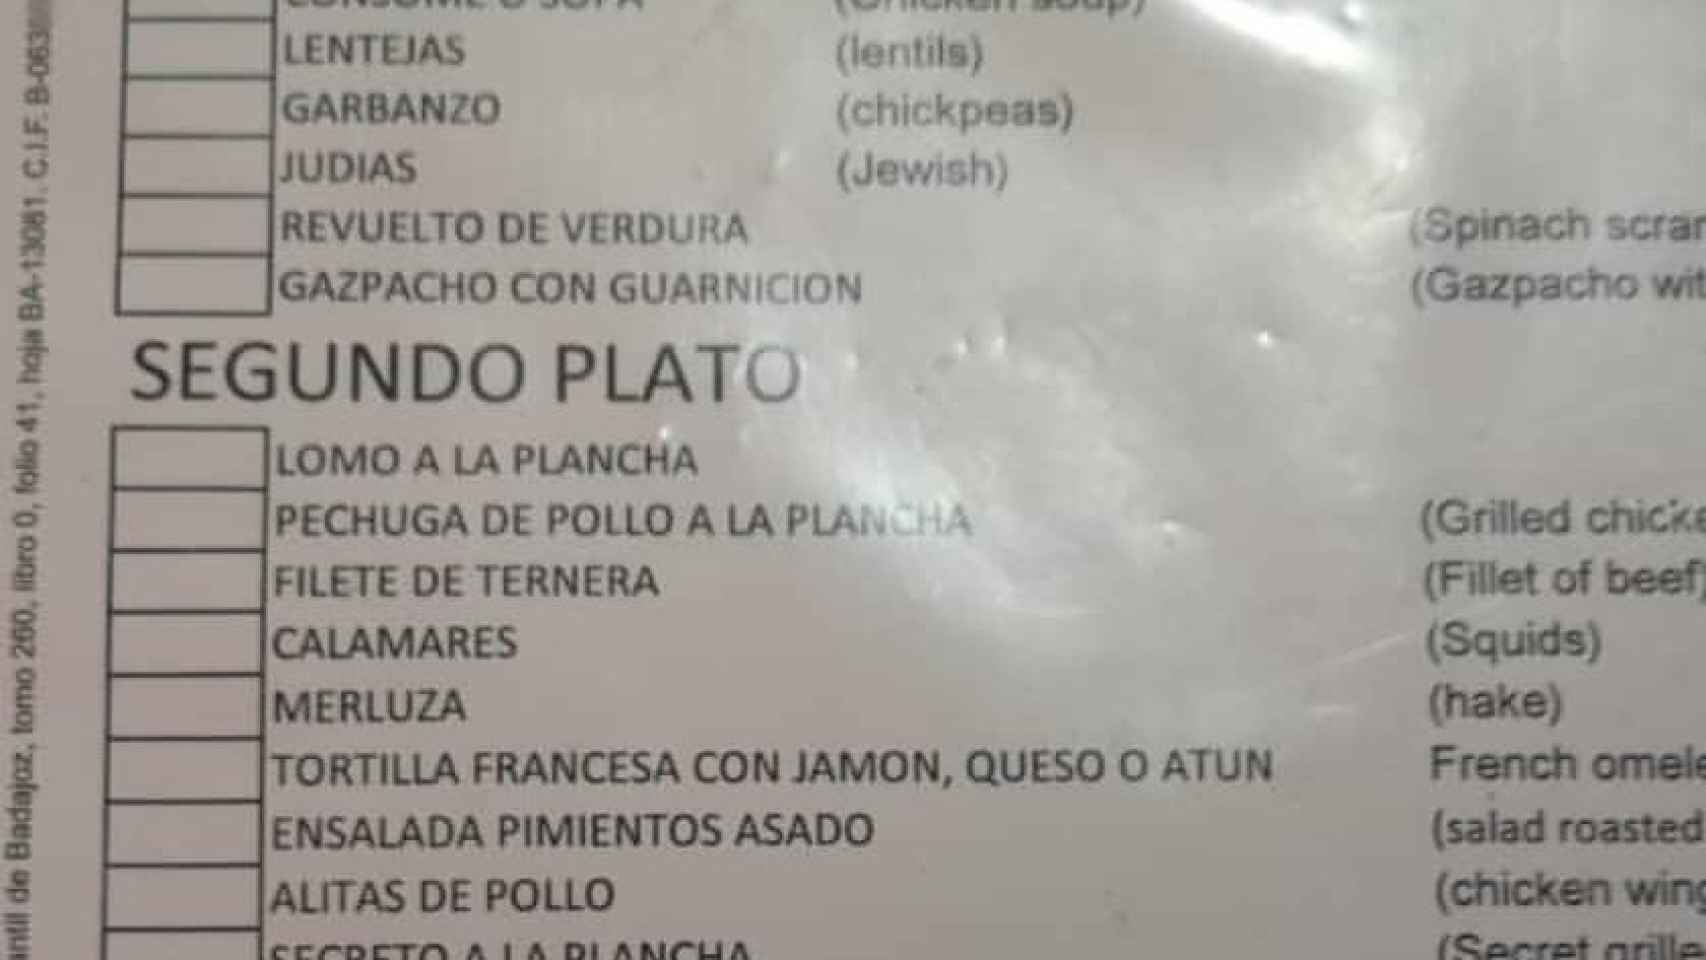 La carta en inglés 'macarrónico' de un restaurante de Cáceres.